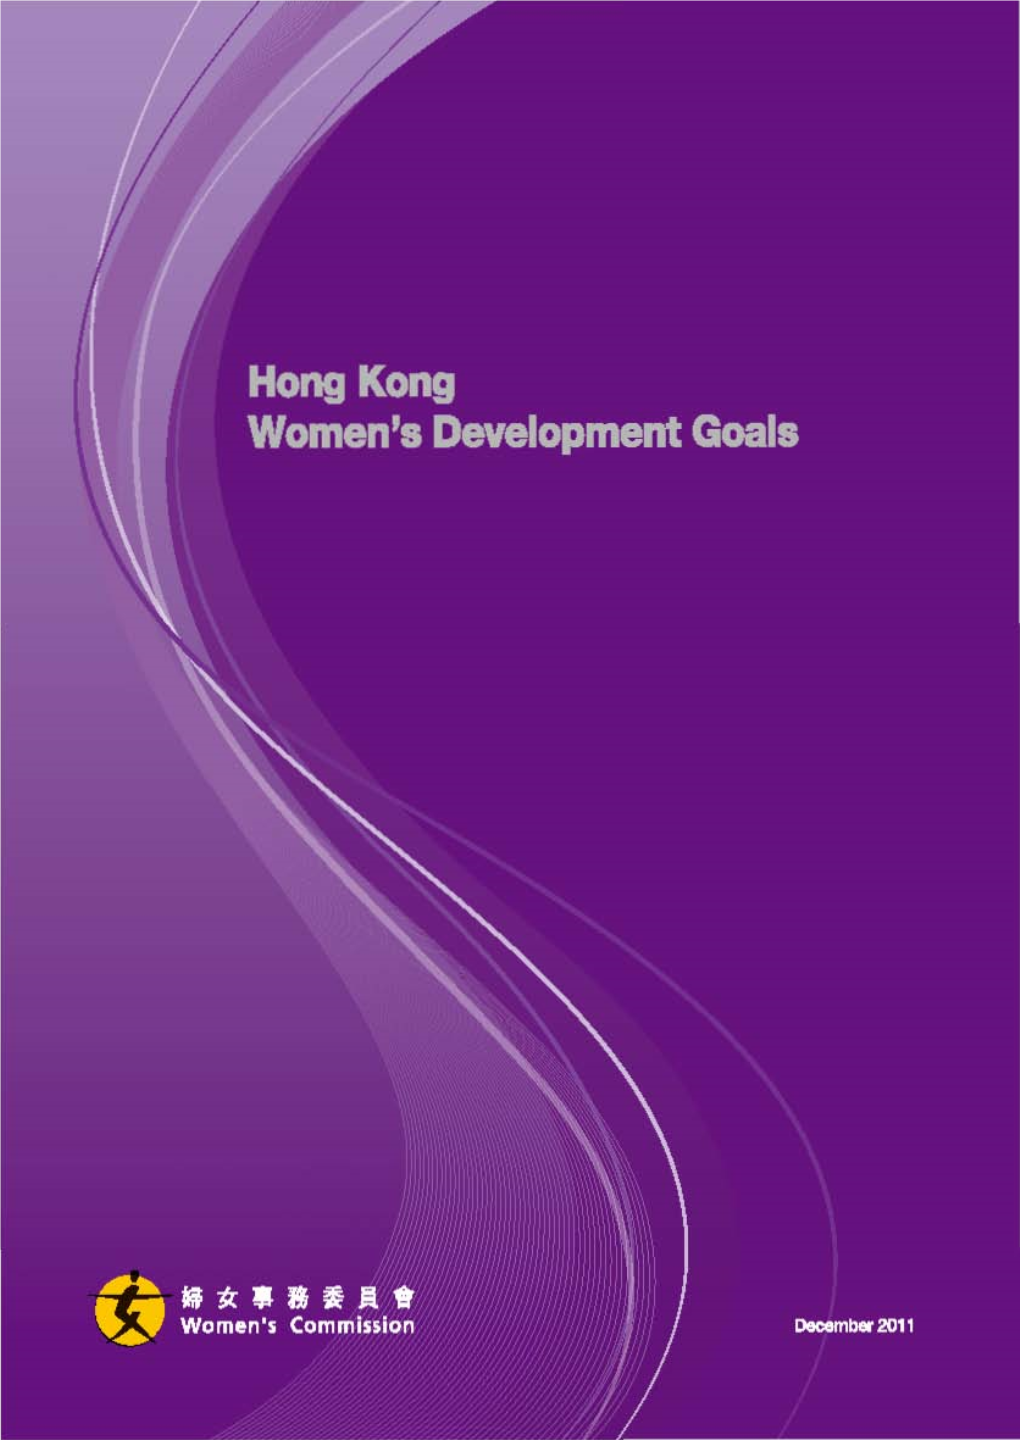 Hong Kong Women's Development Goals” Has Been Open and Transparent